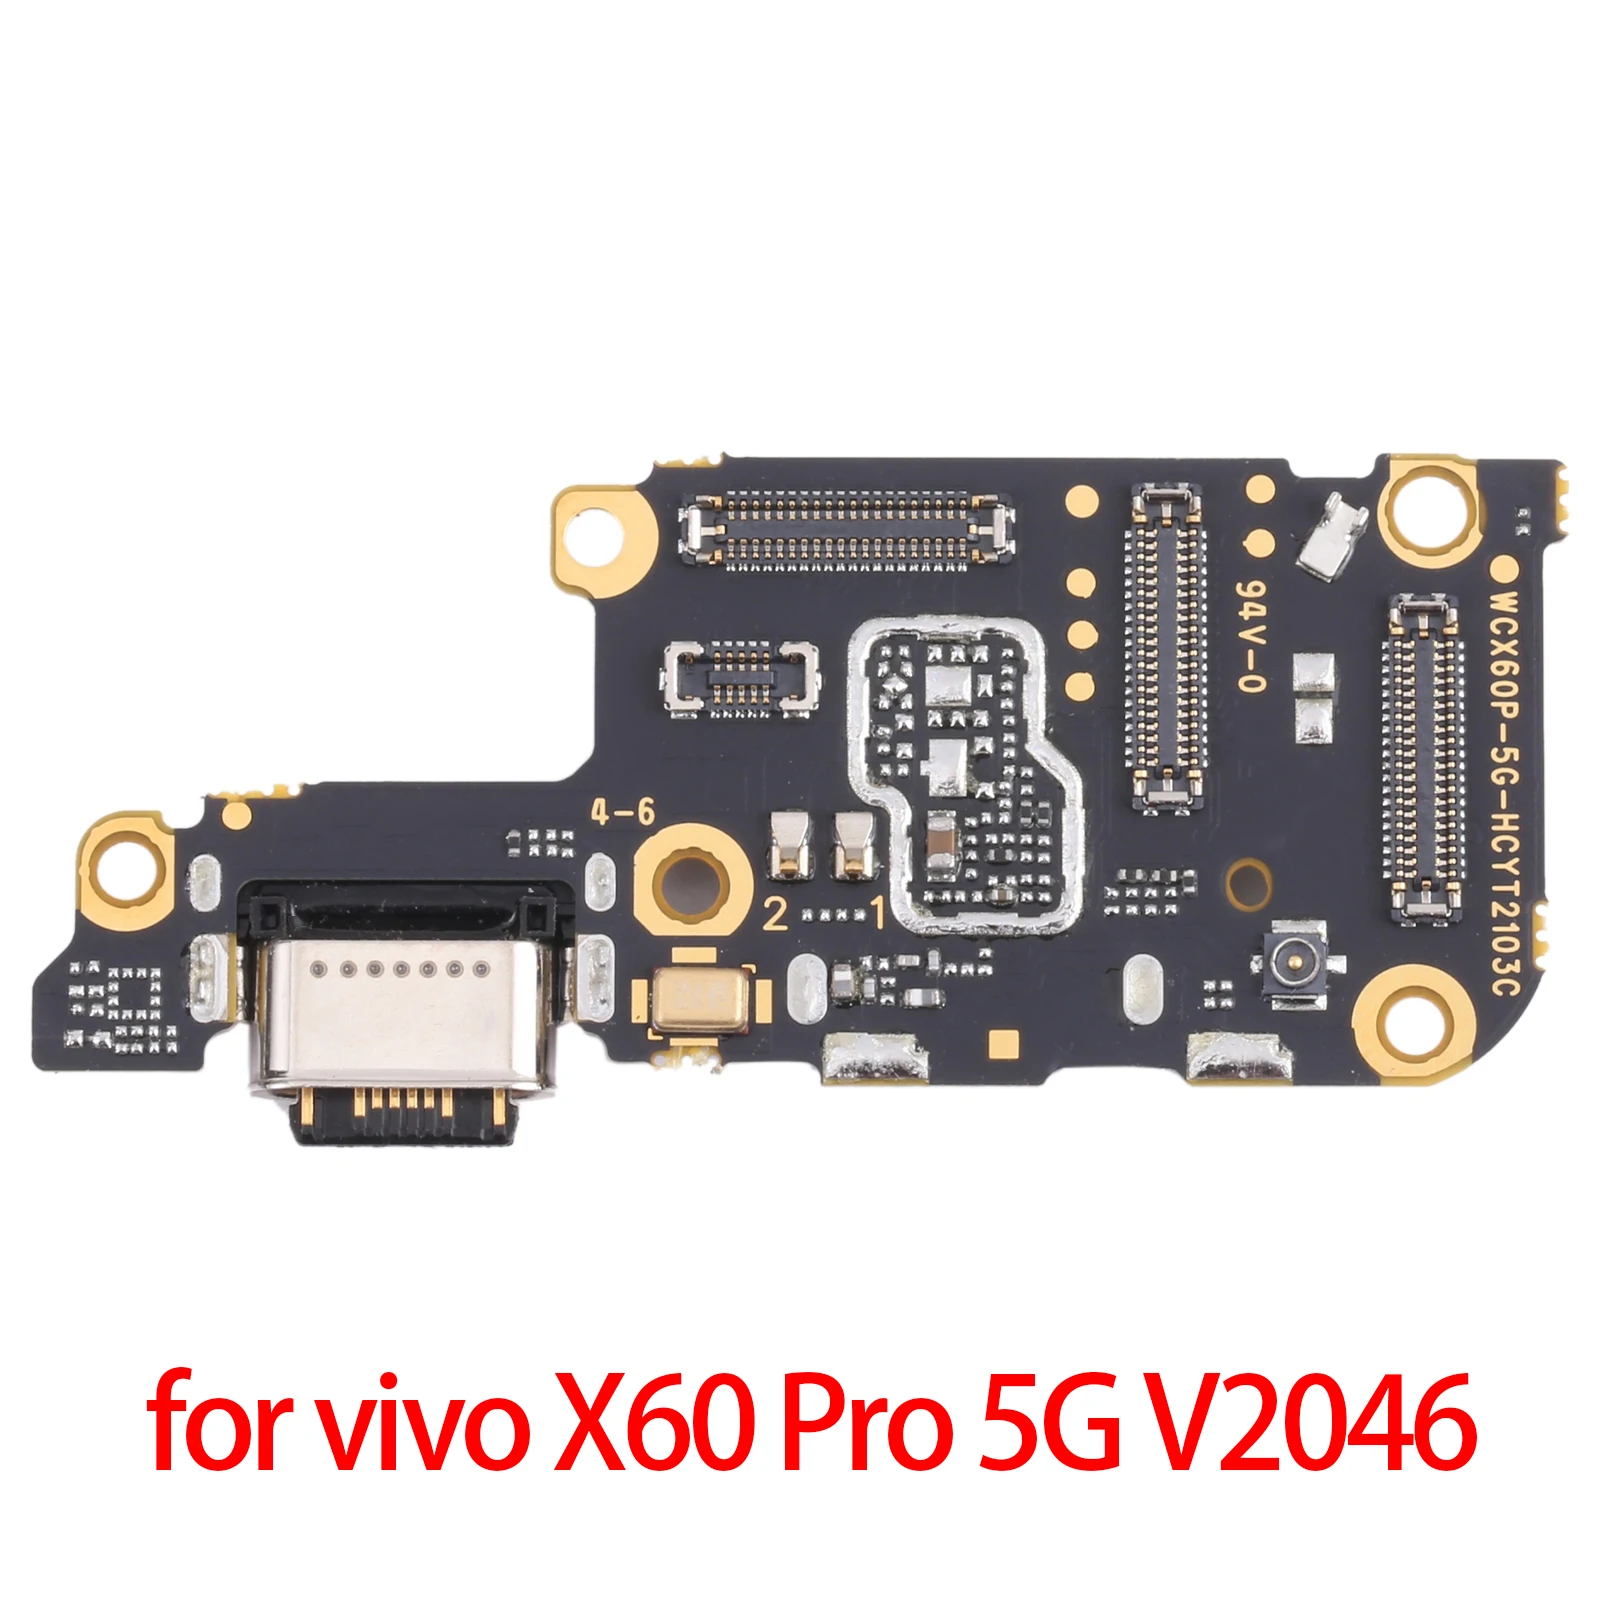 עבור vivo X60 Pro 5G V2046 USB לטעינה יציאת לוח vivo X60 Pro 5G V2046 - 0